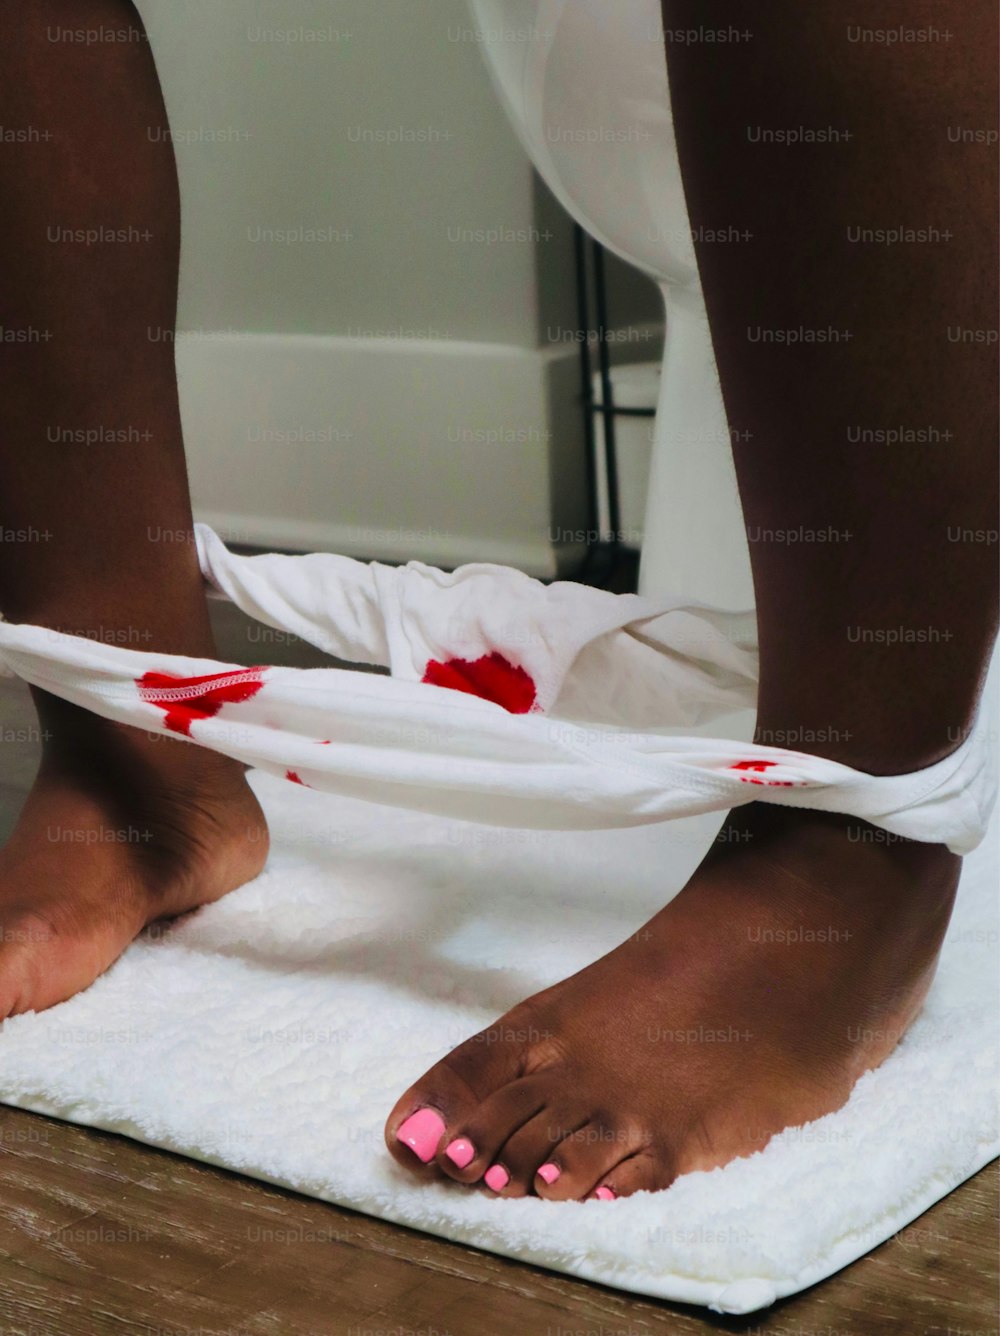 uma pessoa com sangue nos pés em uma toalha